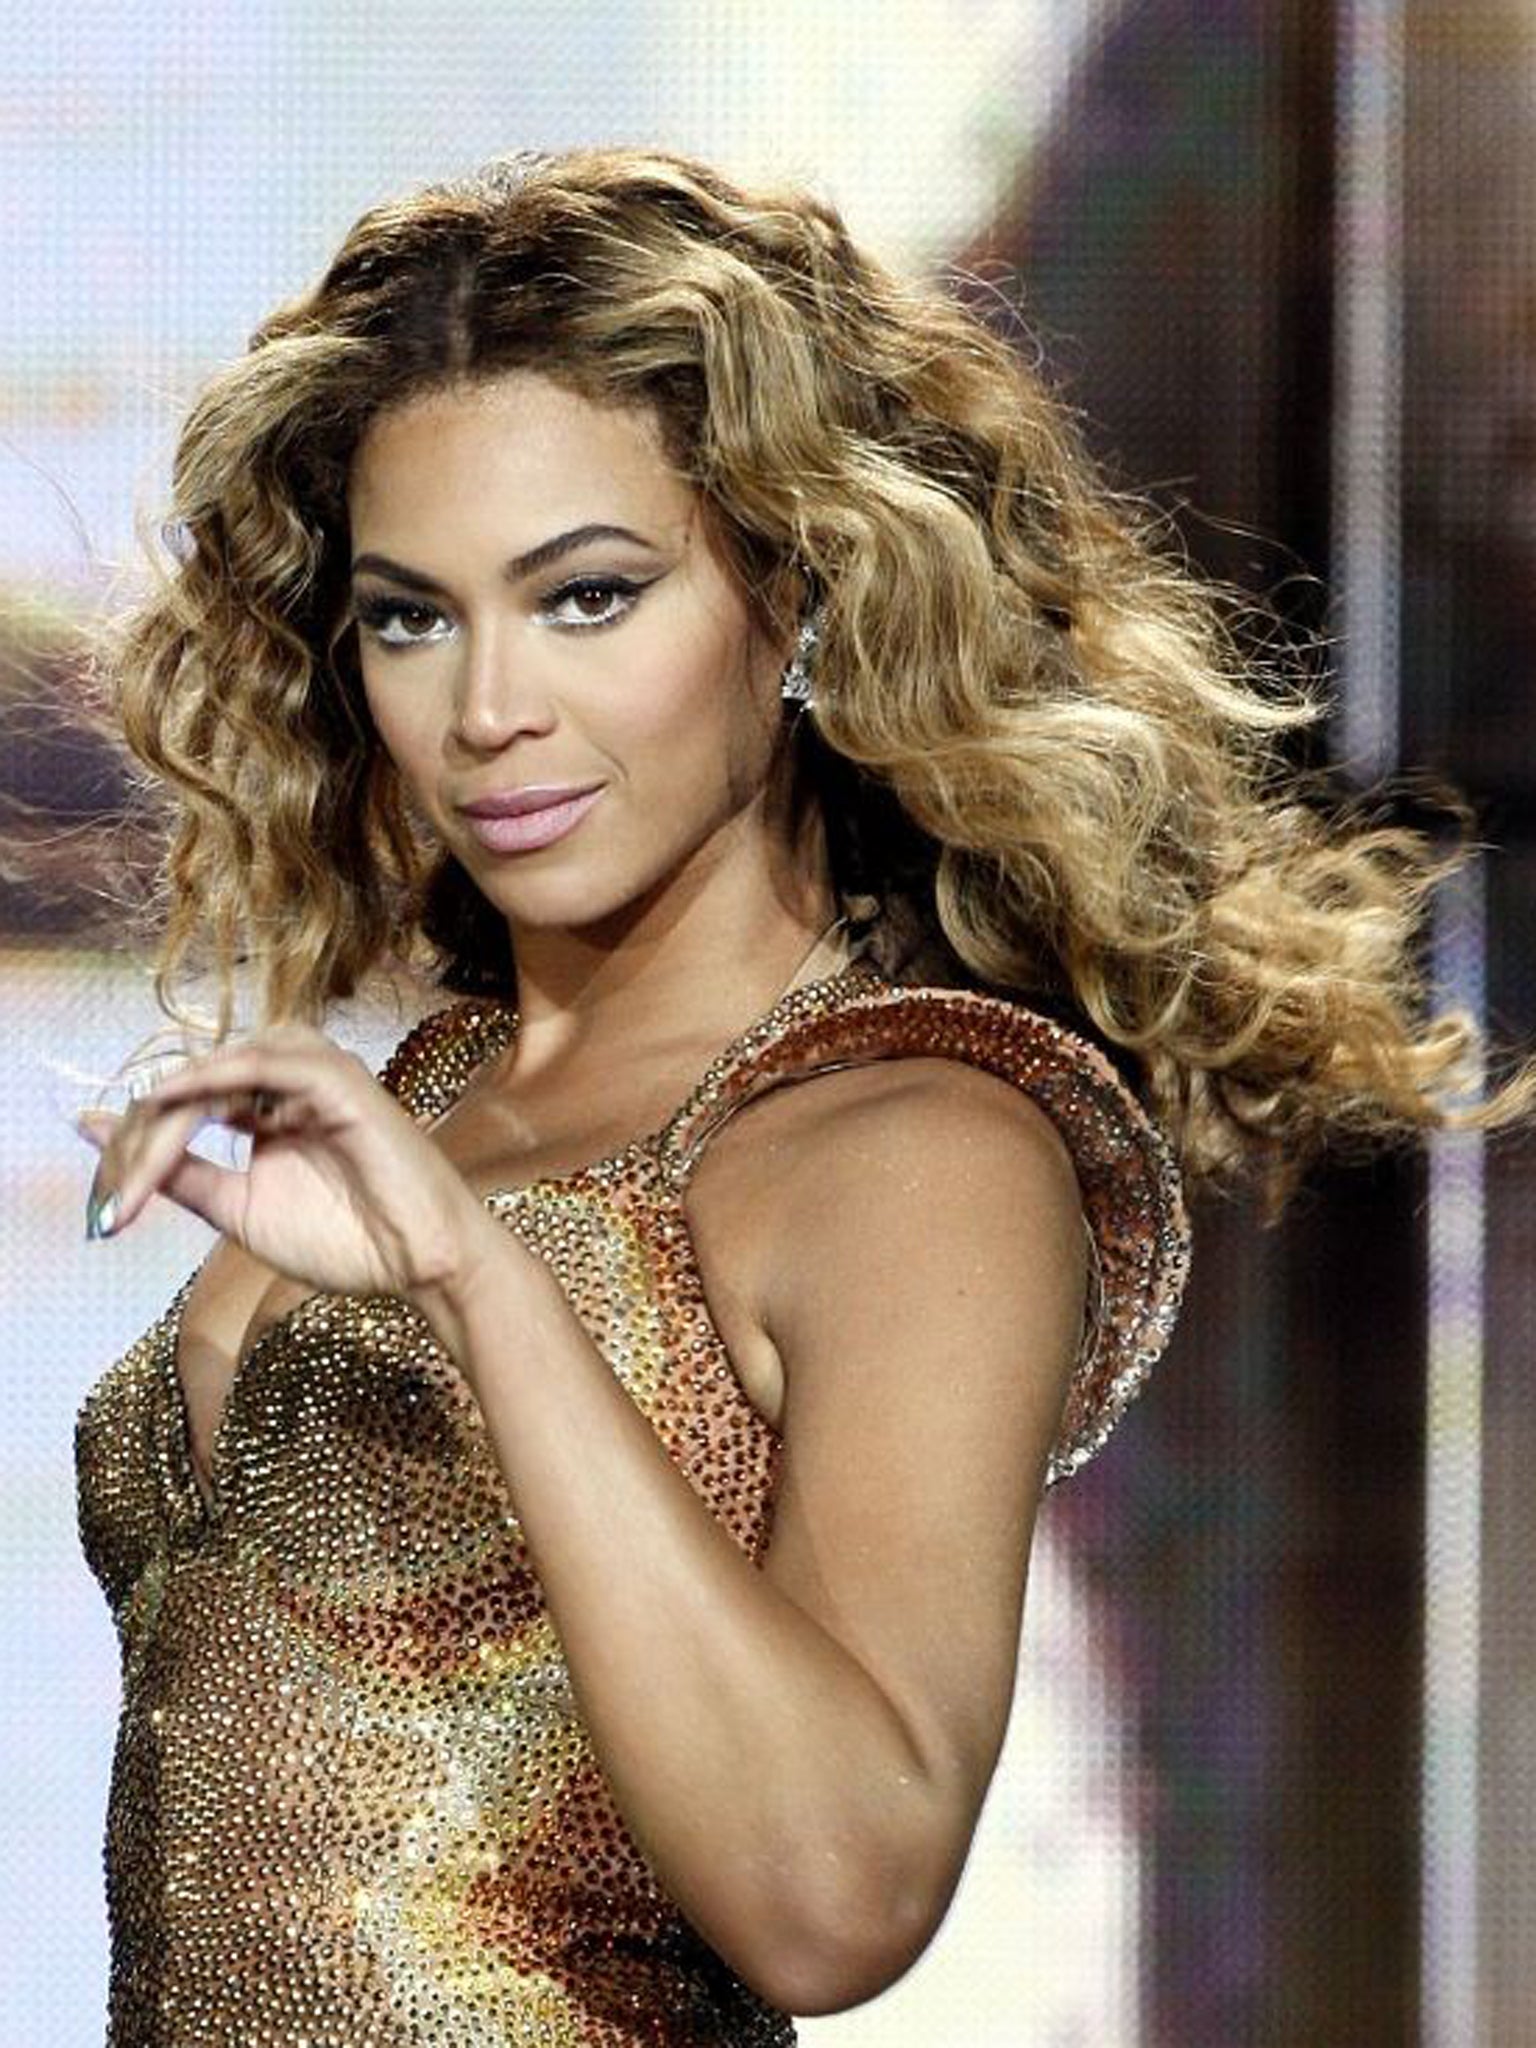 Beyonce - Crazy In Love  Beyonce crazy in love, Beyonce outfits, Fashion